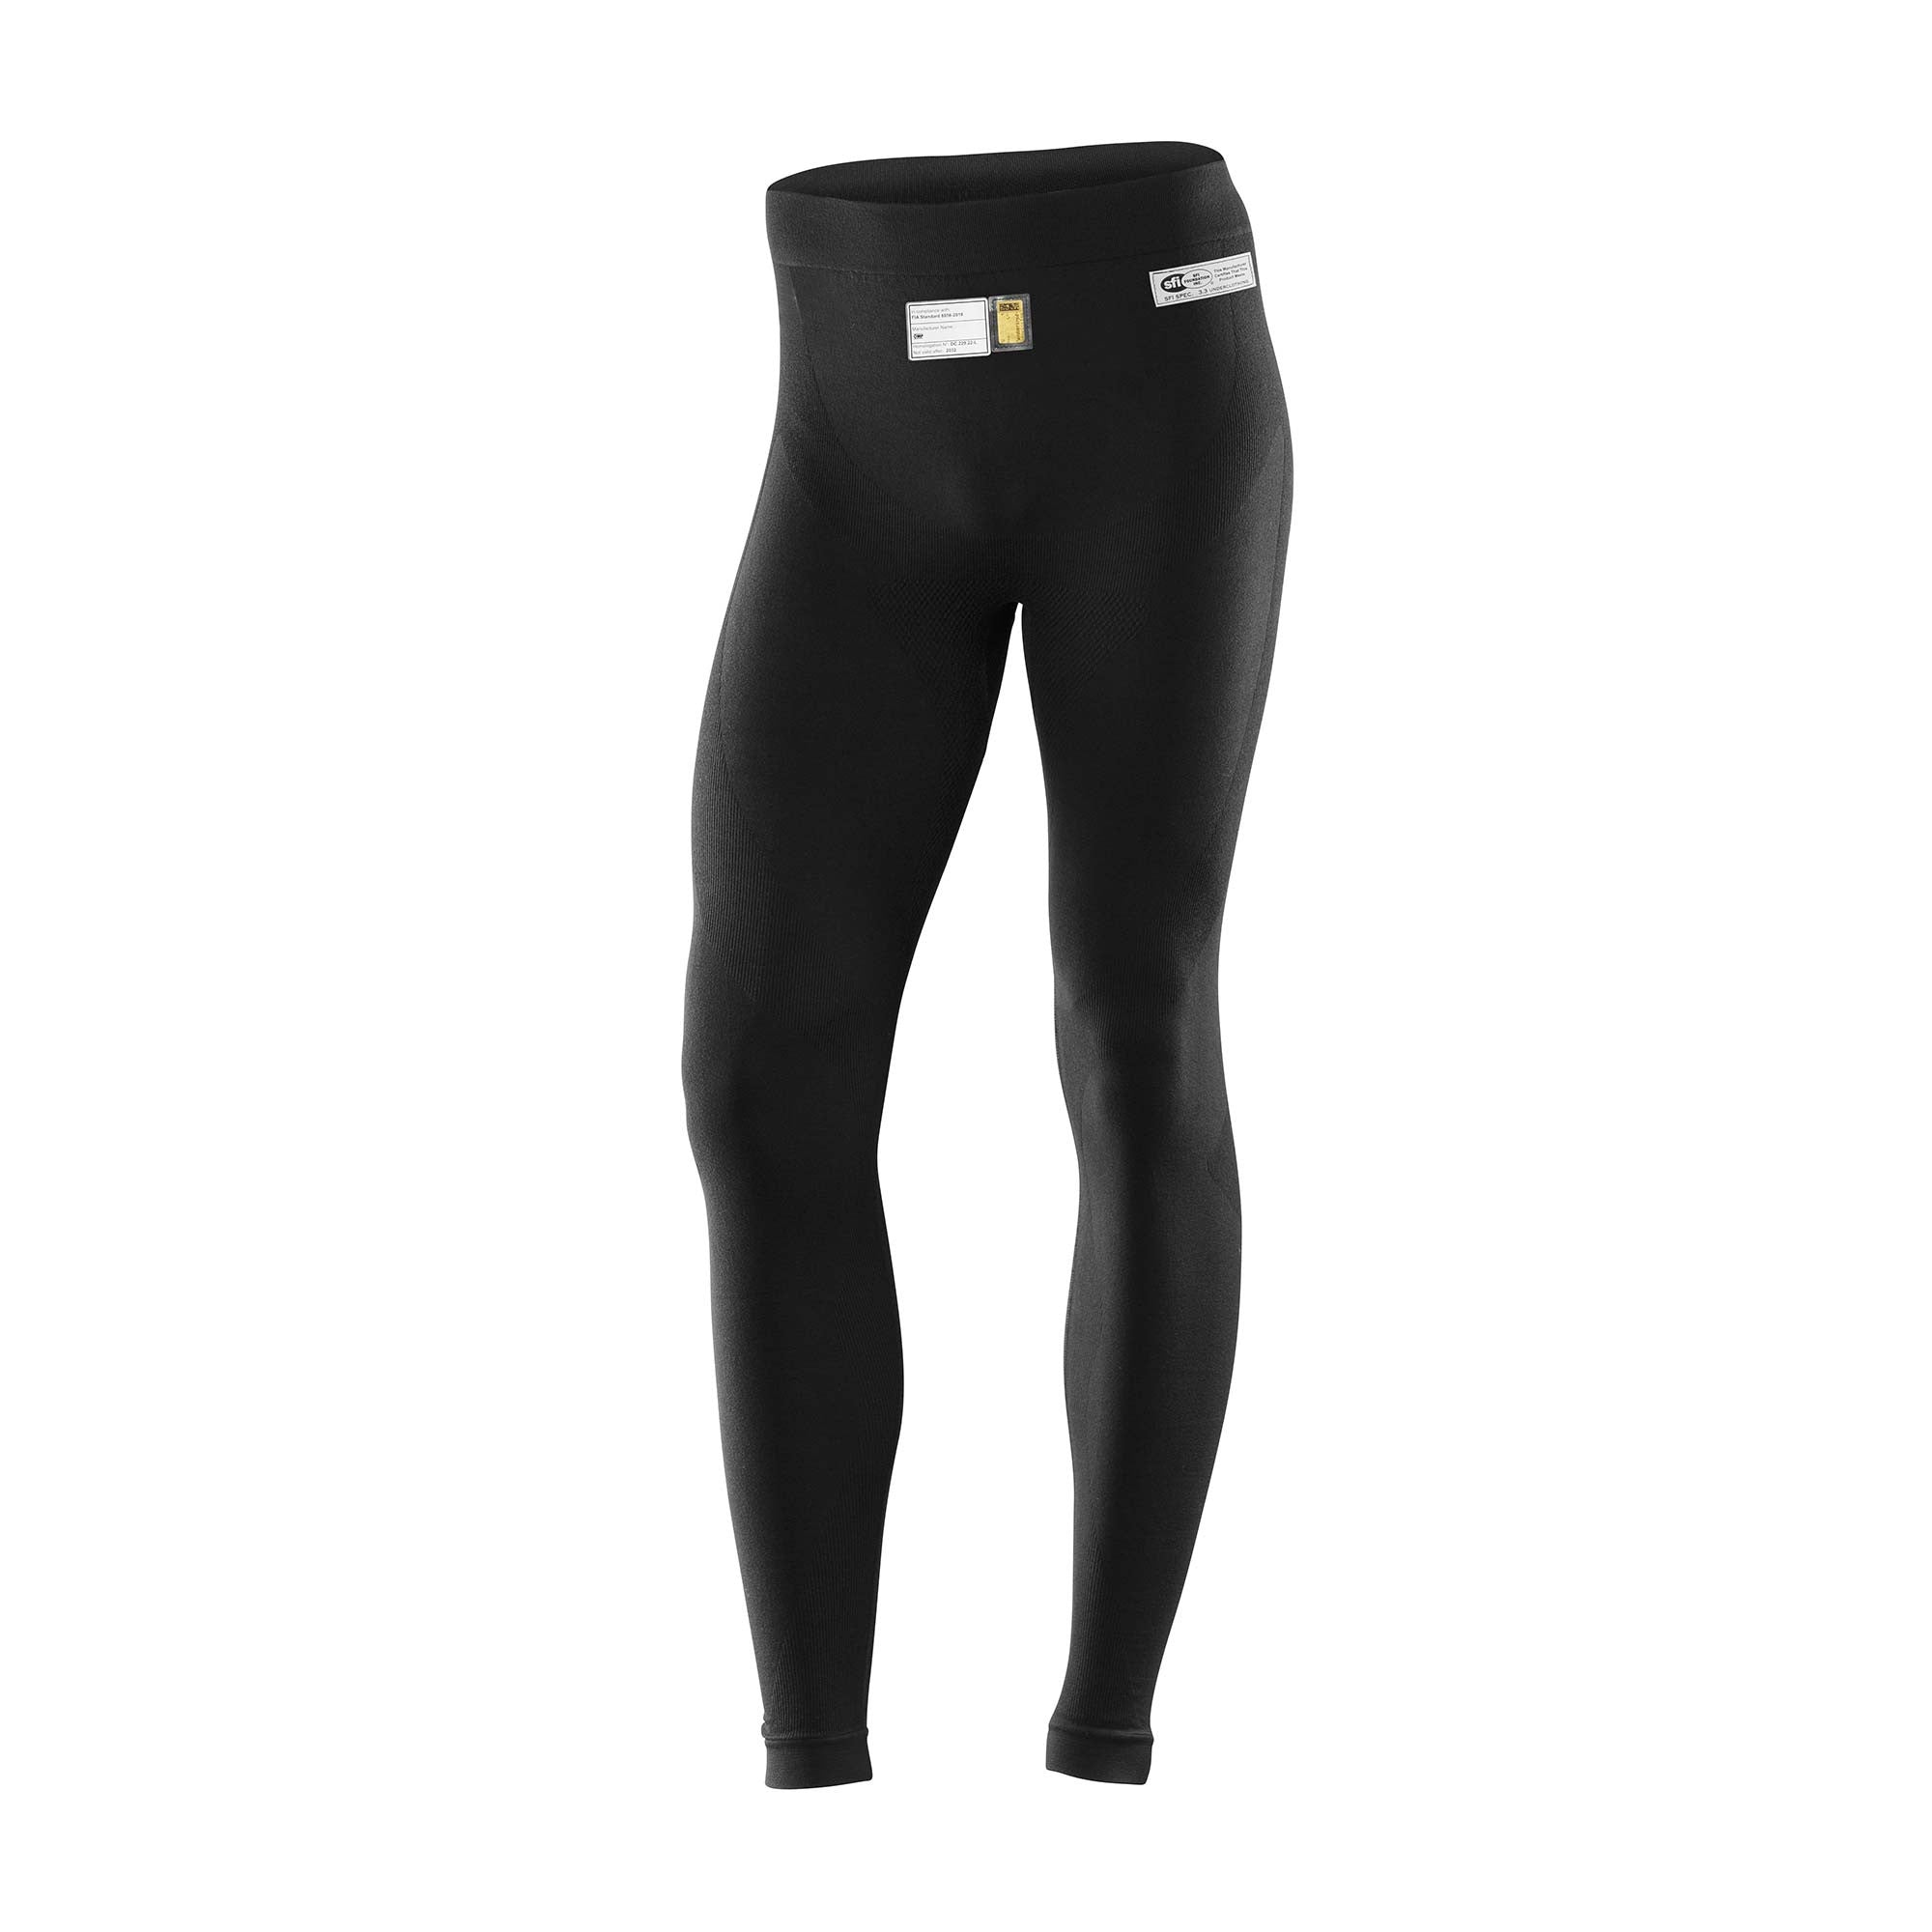 OMP IE0-0793-A01-071-XSS ONE EVO Pants underwear, FIA 8856-2018, black, size XS/S Photo-0 